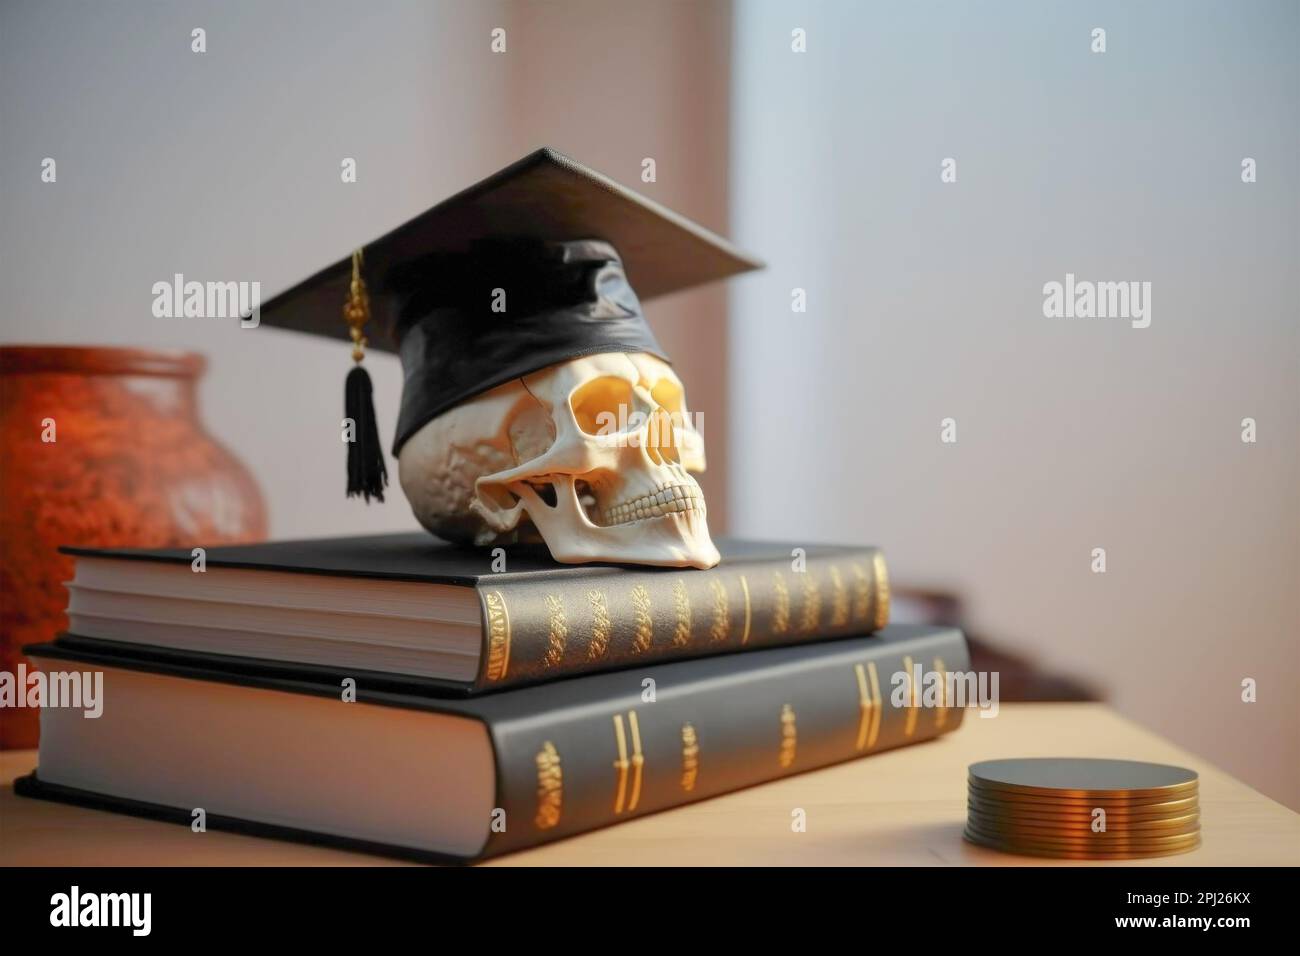 Le crâne d'un homme dans une casquette de diplômé traditionnelle se trouve sur des livres universitaires. Le concept de la remise des diplômes de l'école, de l'université, de l'éducation, de l'étude Banque D'Images